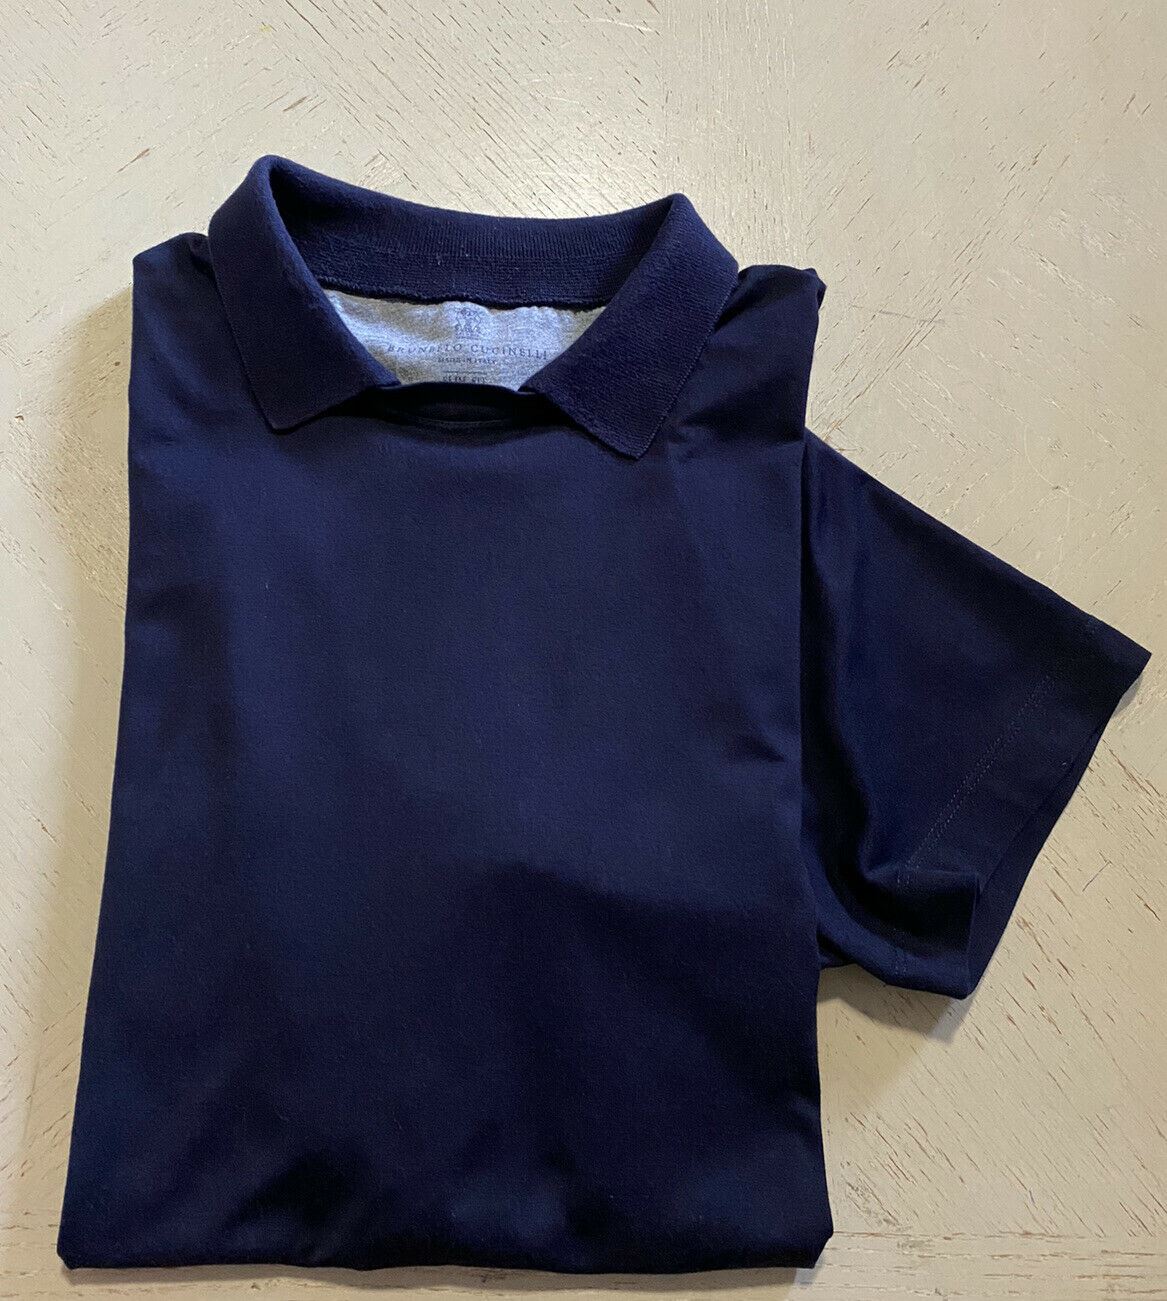 595 $ Brunello Cucinelli Herren-T-Shirt Slim Fit Marineblau Größe L Italien